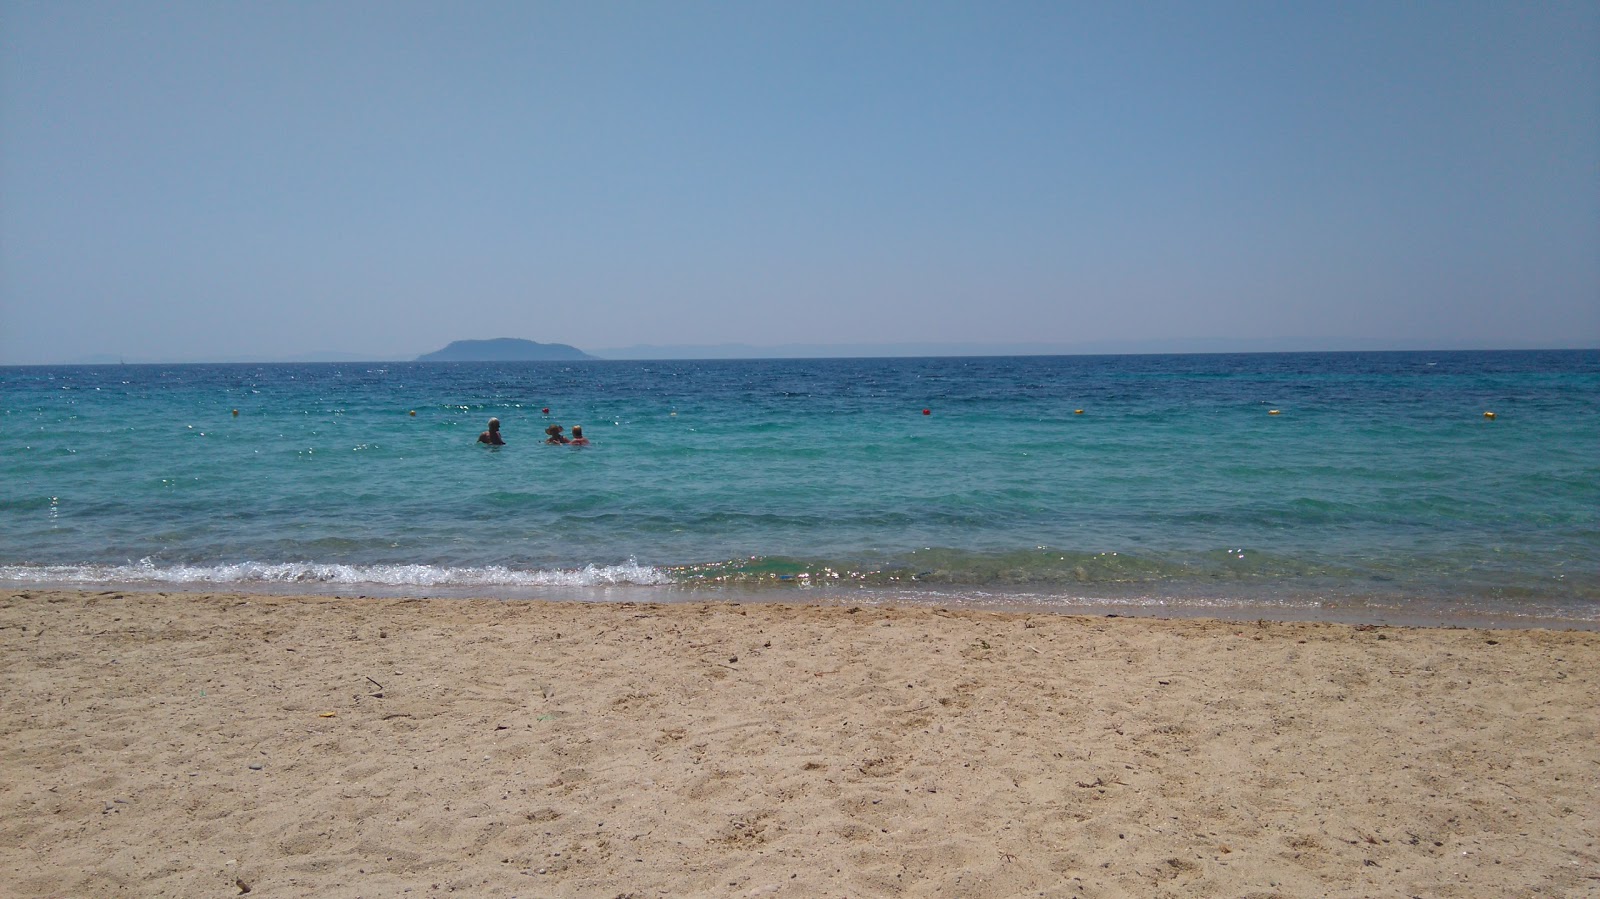 Tripotamos beach'in fotoğrafı geniş plaj ile birlikte